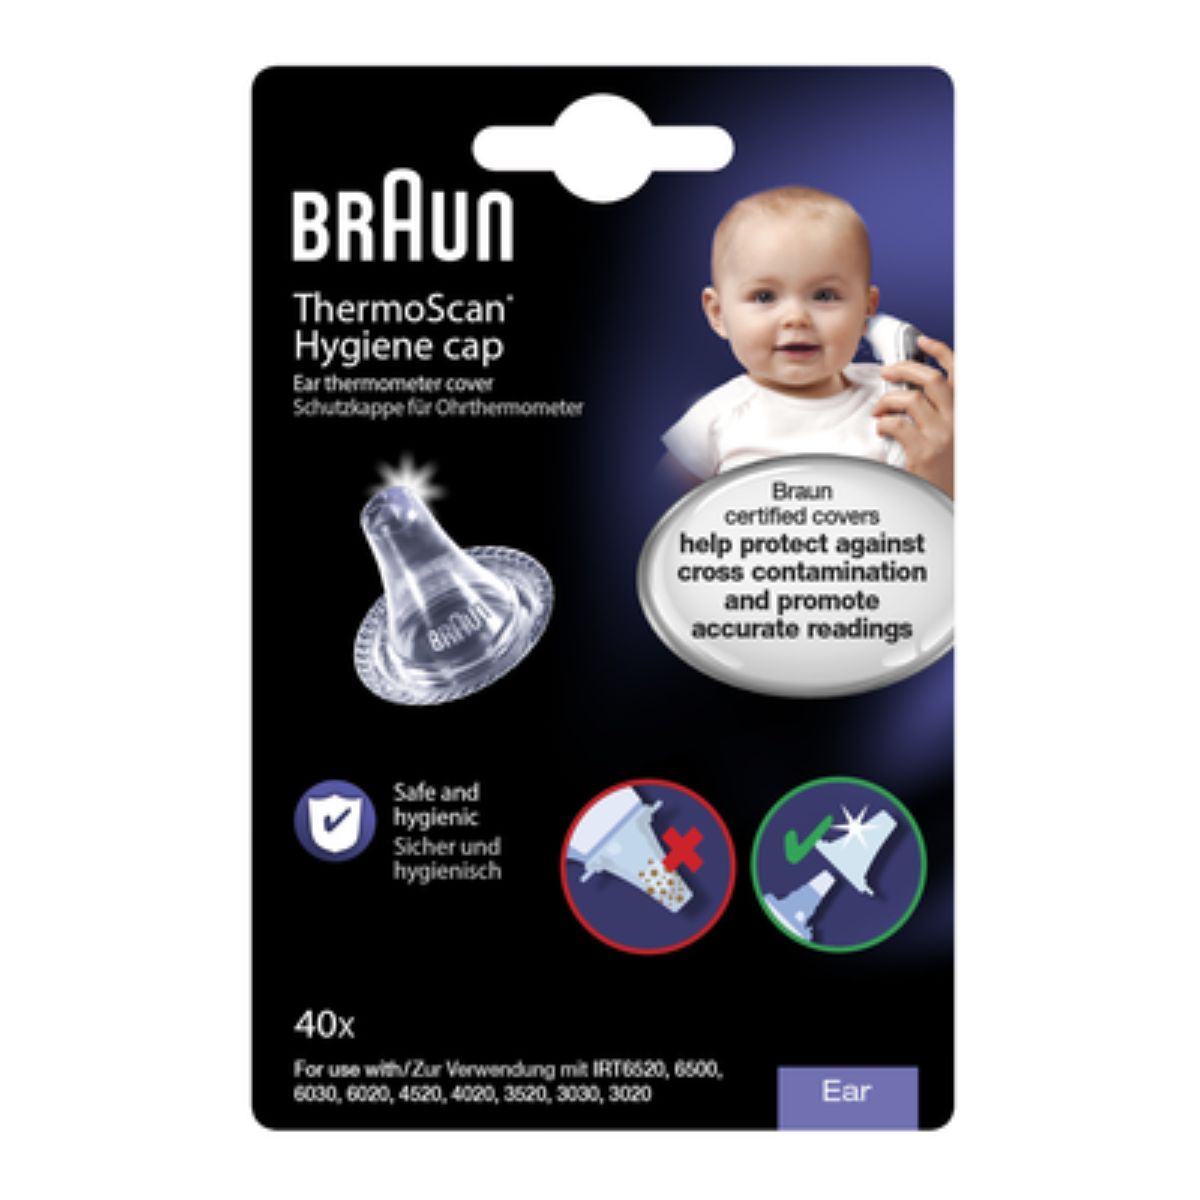 De Braun thermoscan lens filters zijn hygiënische lensfilters voor eenmalig gebruik bij de Braun thermoscan. Hiermee zorg je voor de beste kwaliteit voor je verkouden kleintje! VanZus